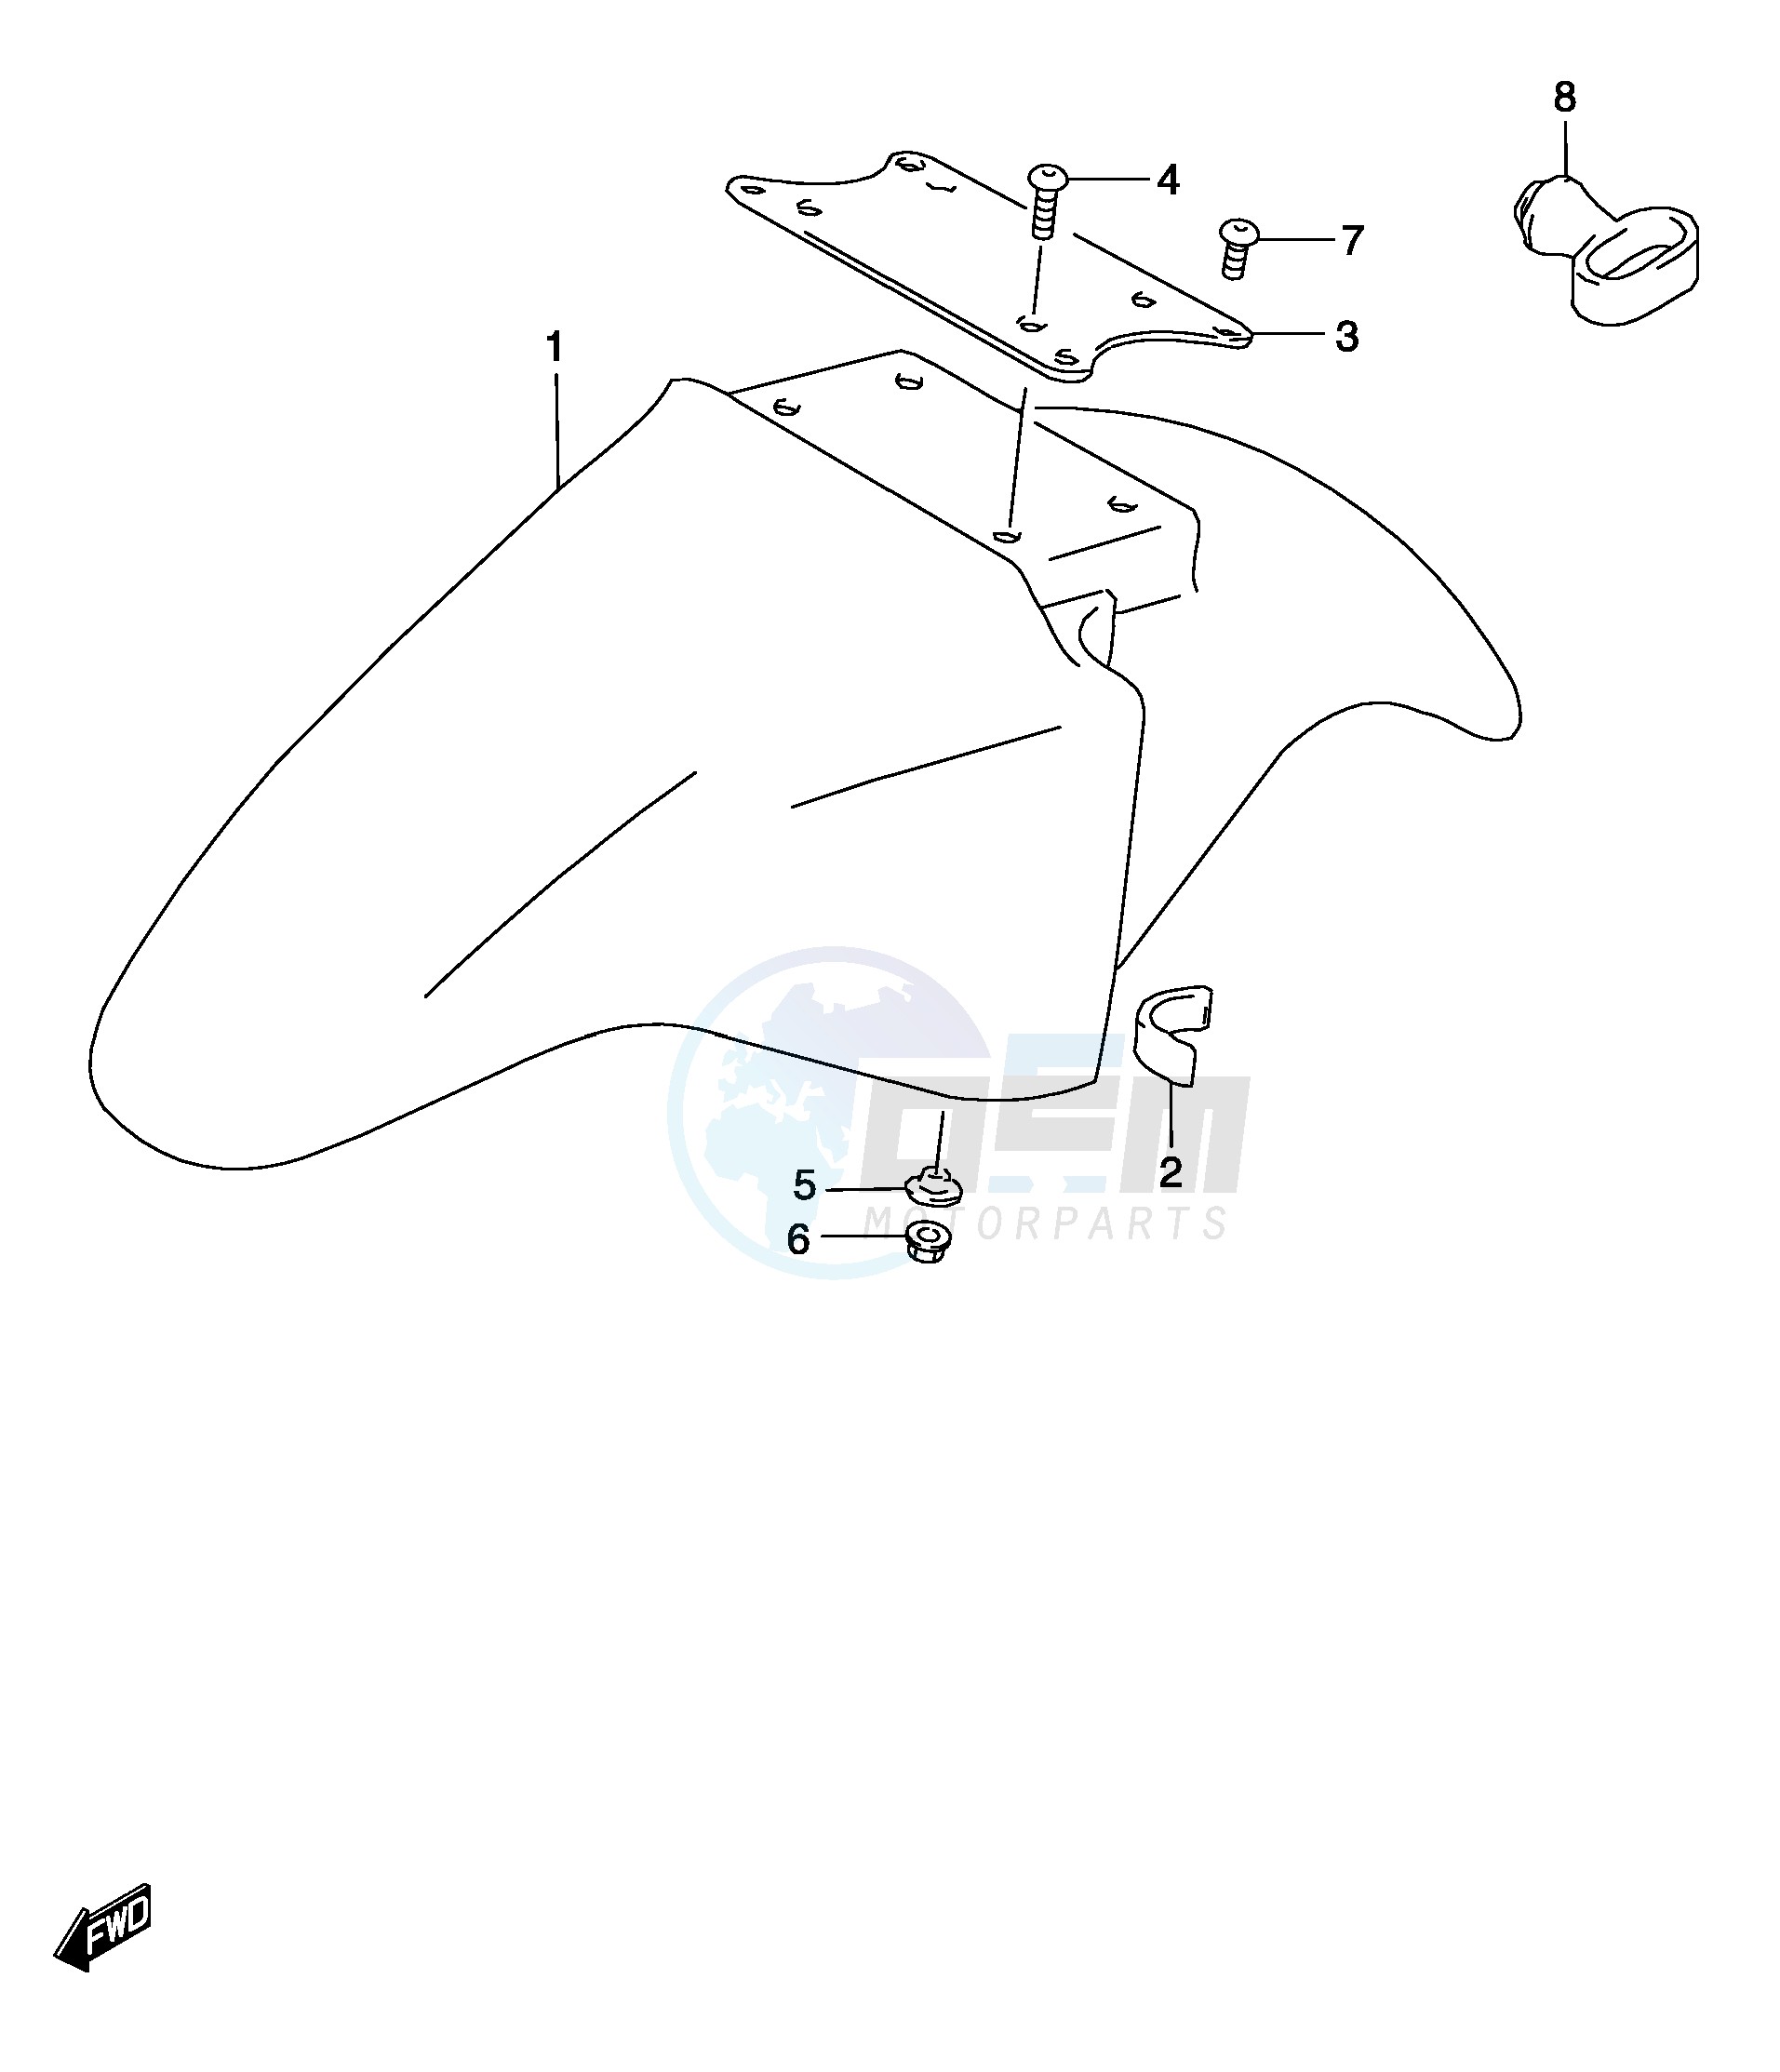 FRONT FENDER (MODEL K3) blueprint